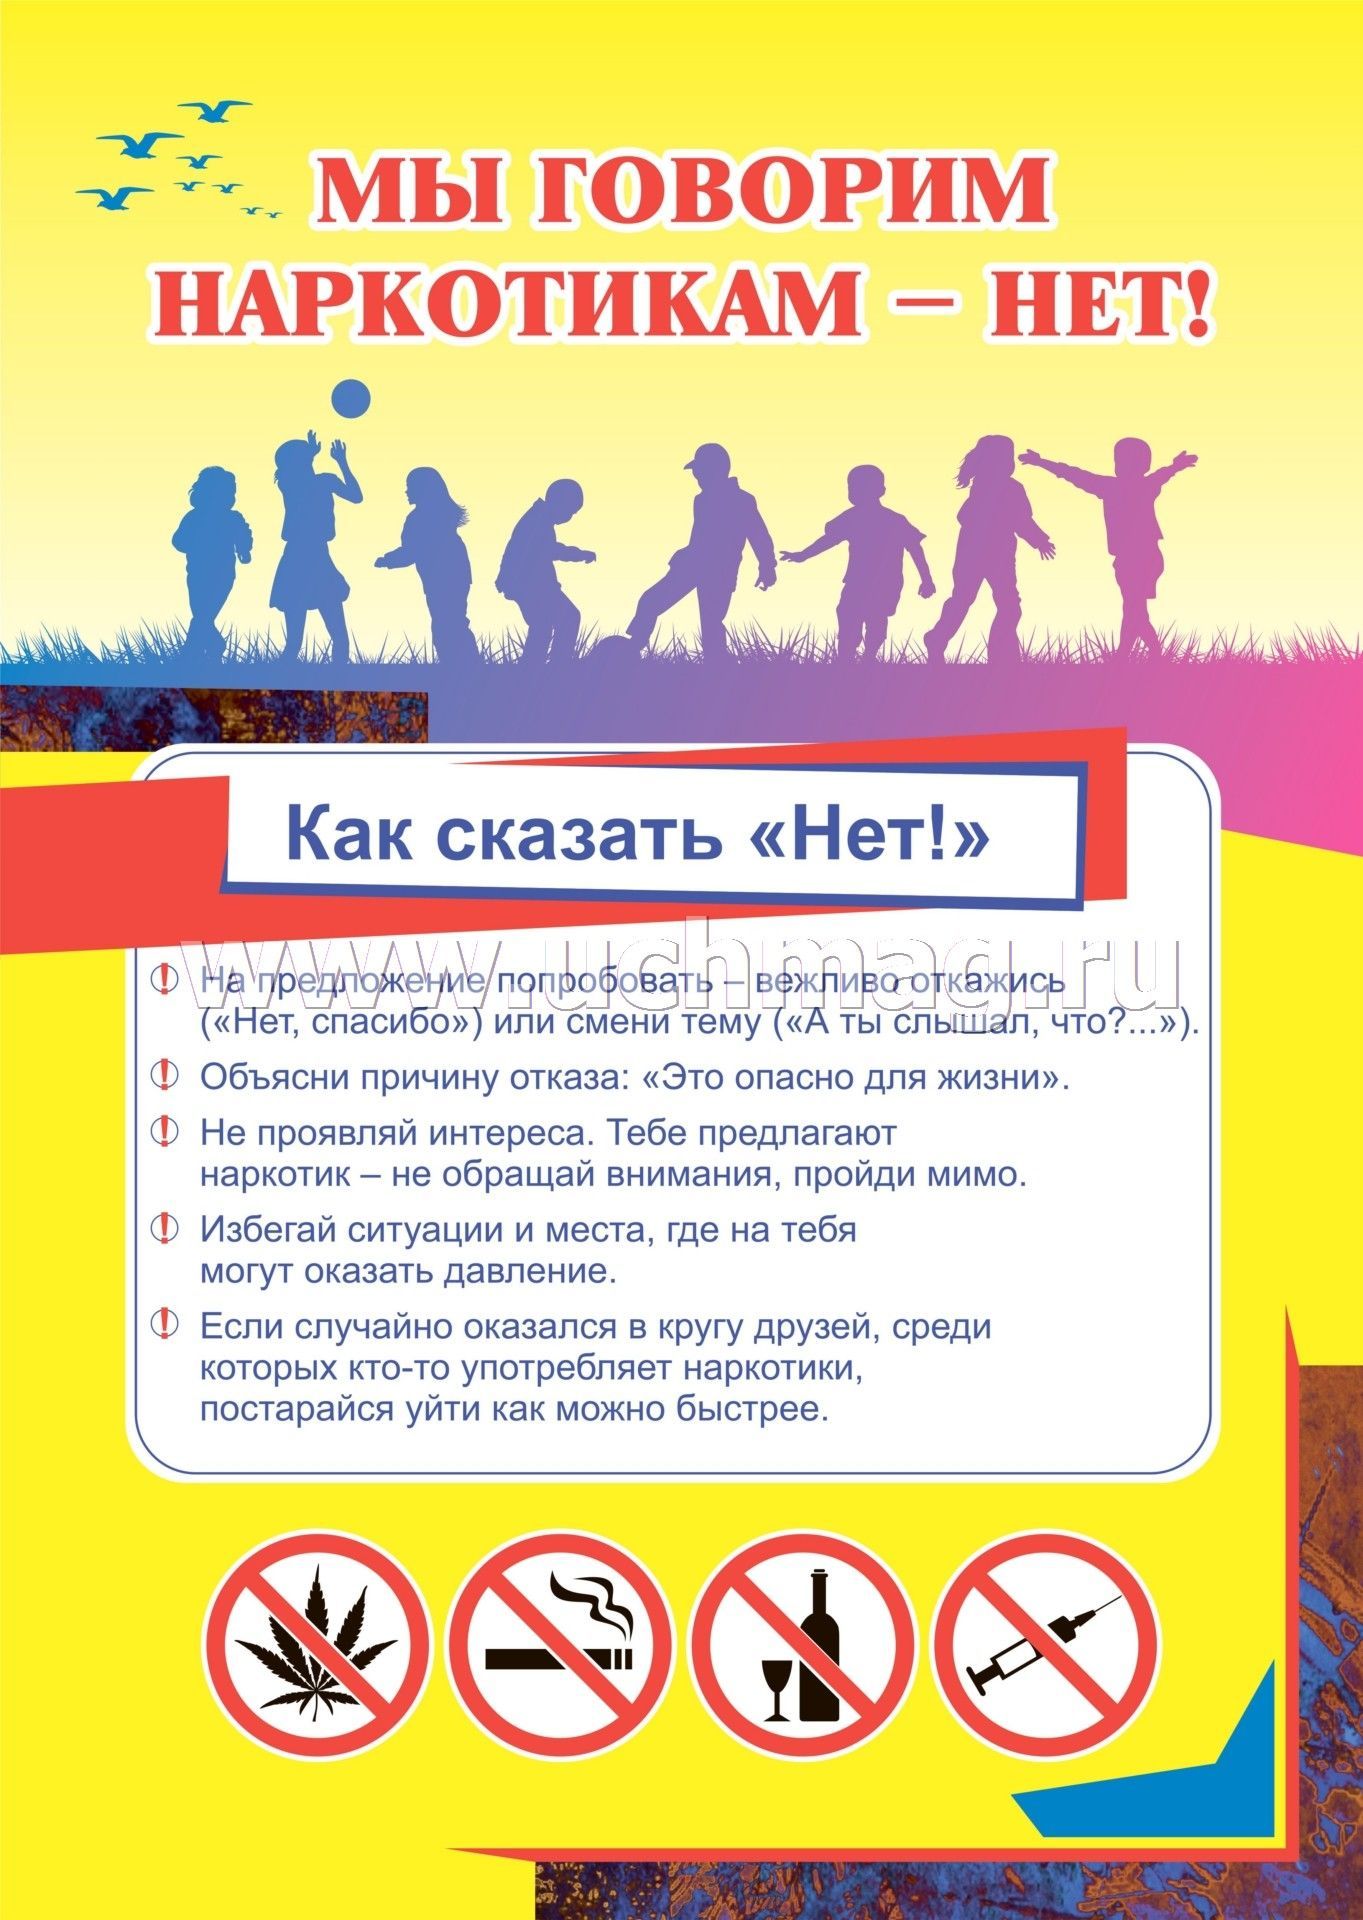 плакат употребления наркотиков